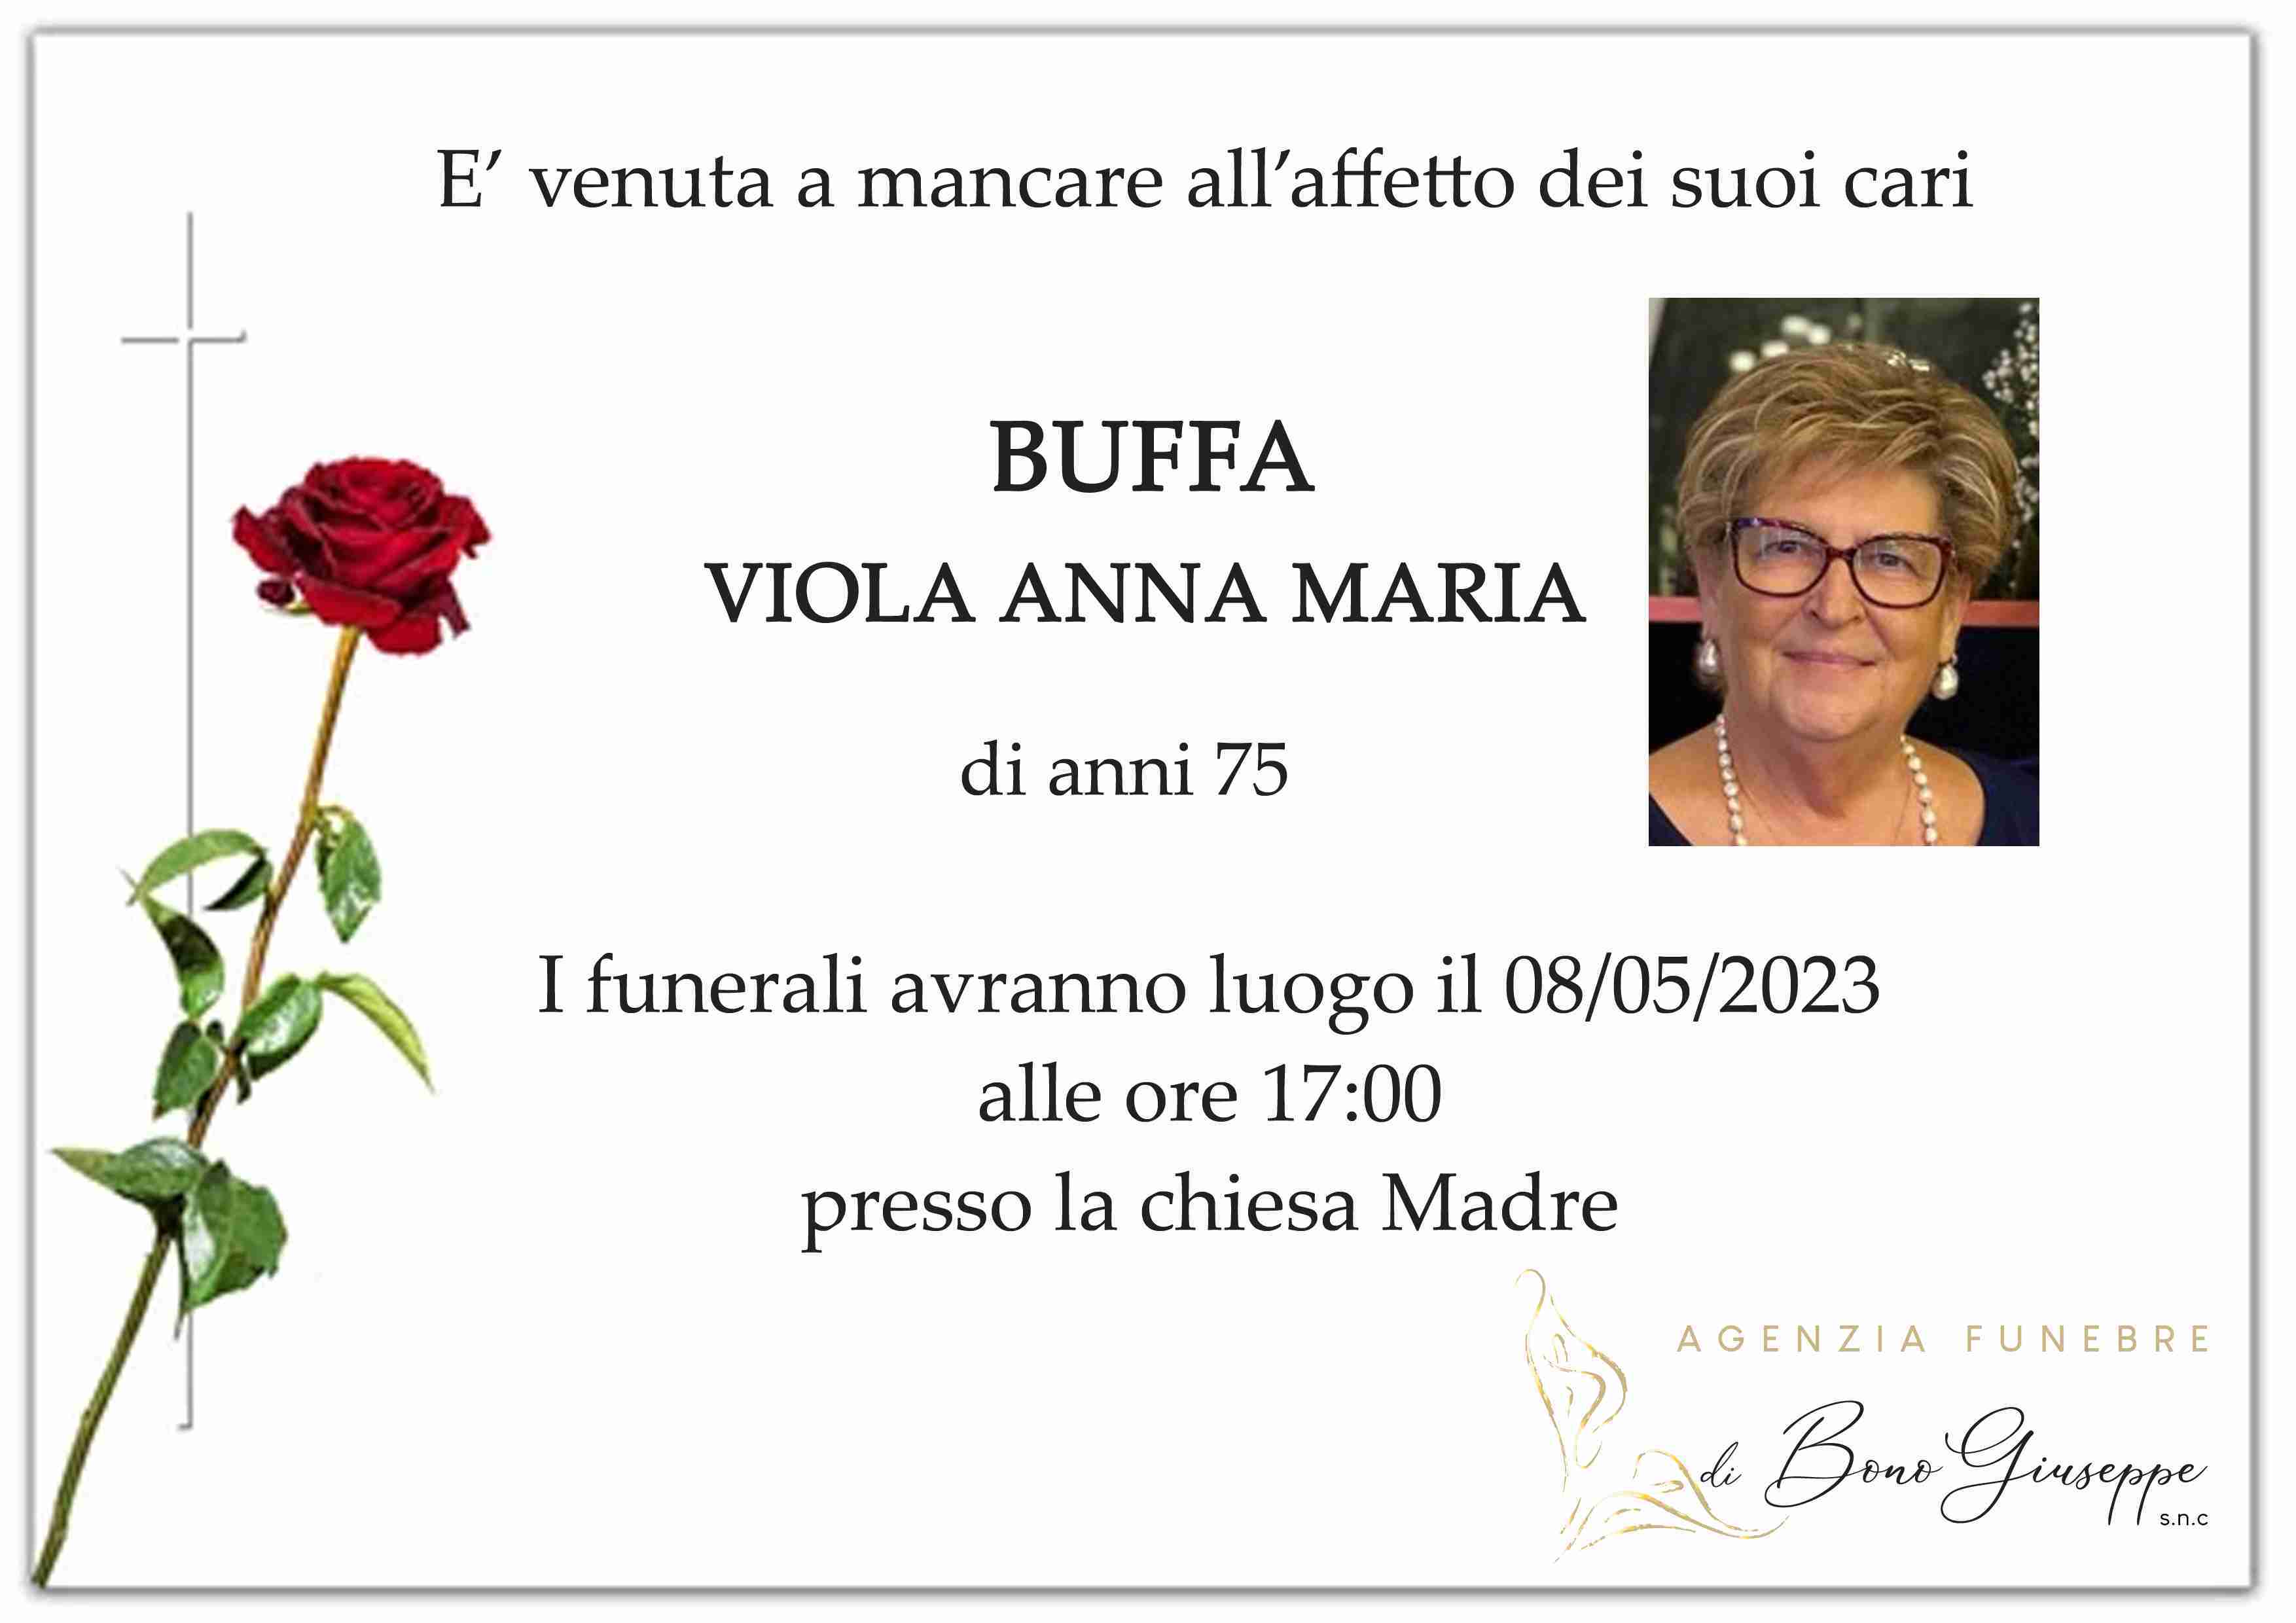 Viola Anna Maria Buffa